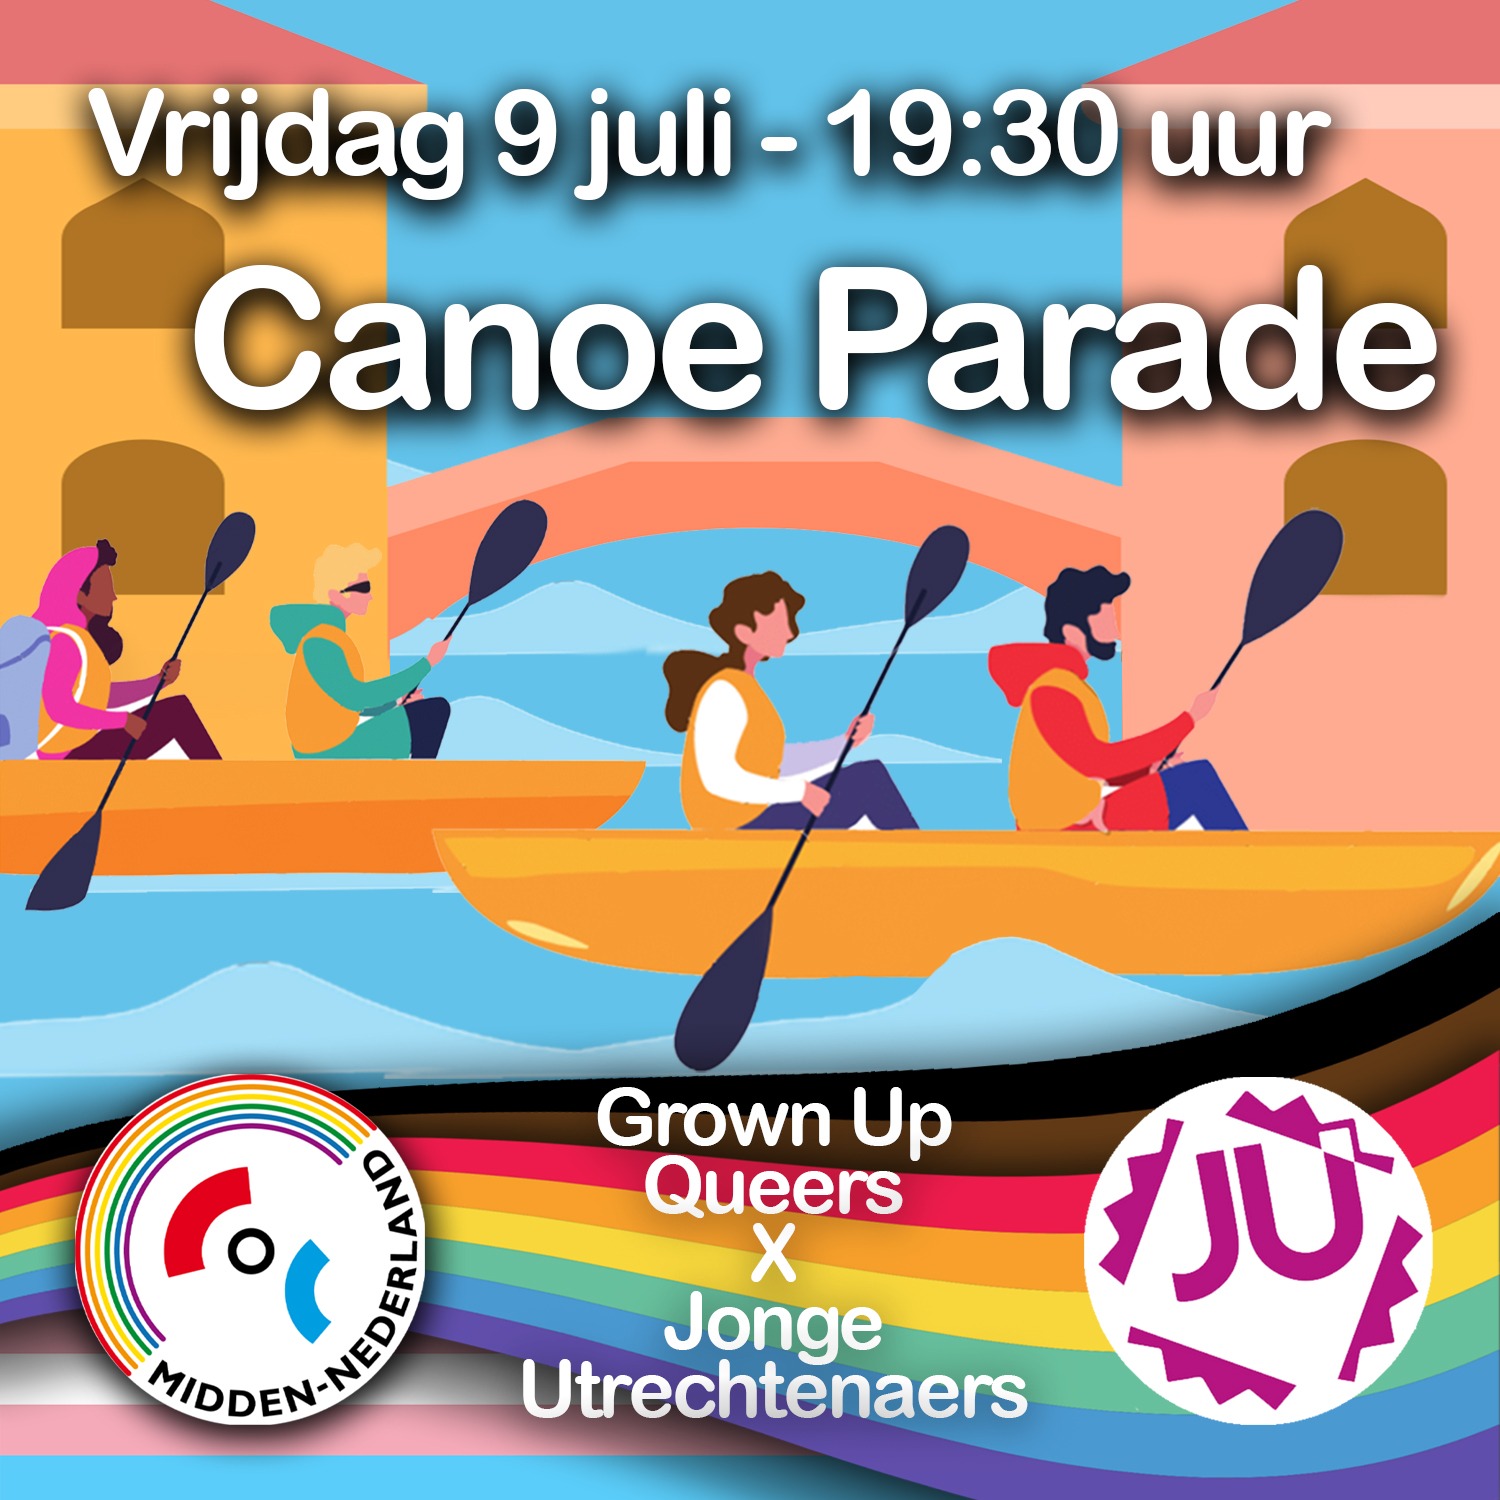 Canoe parade bij COC Midden-Nederland